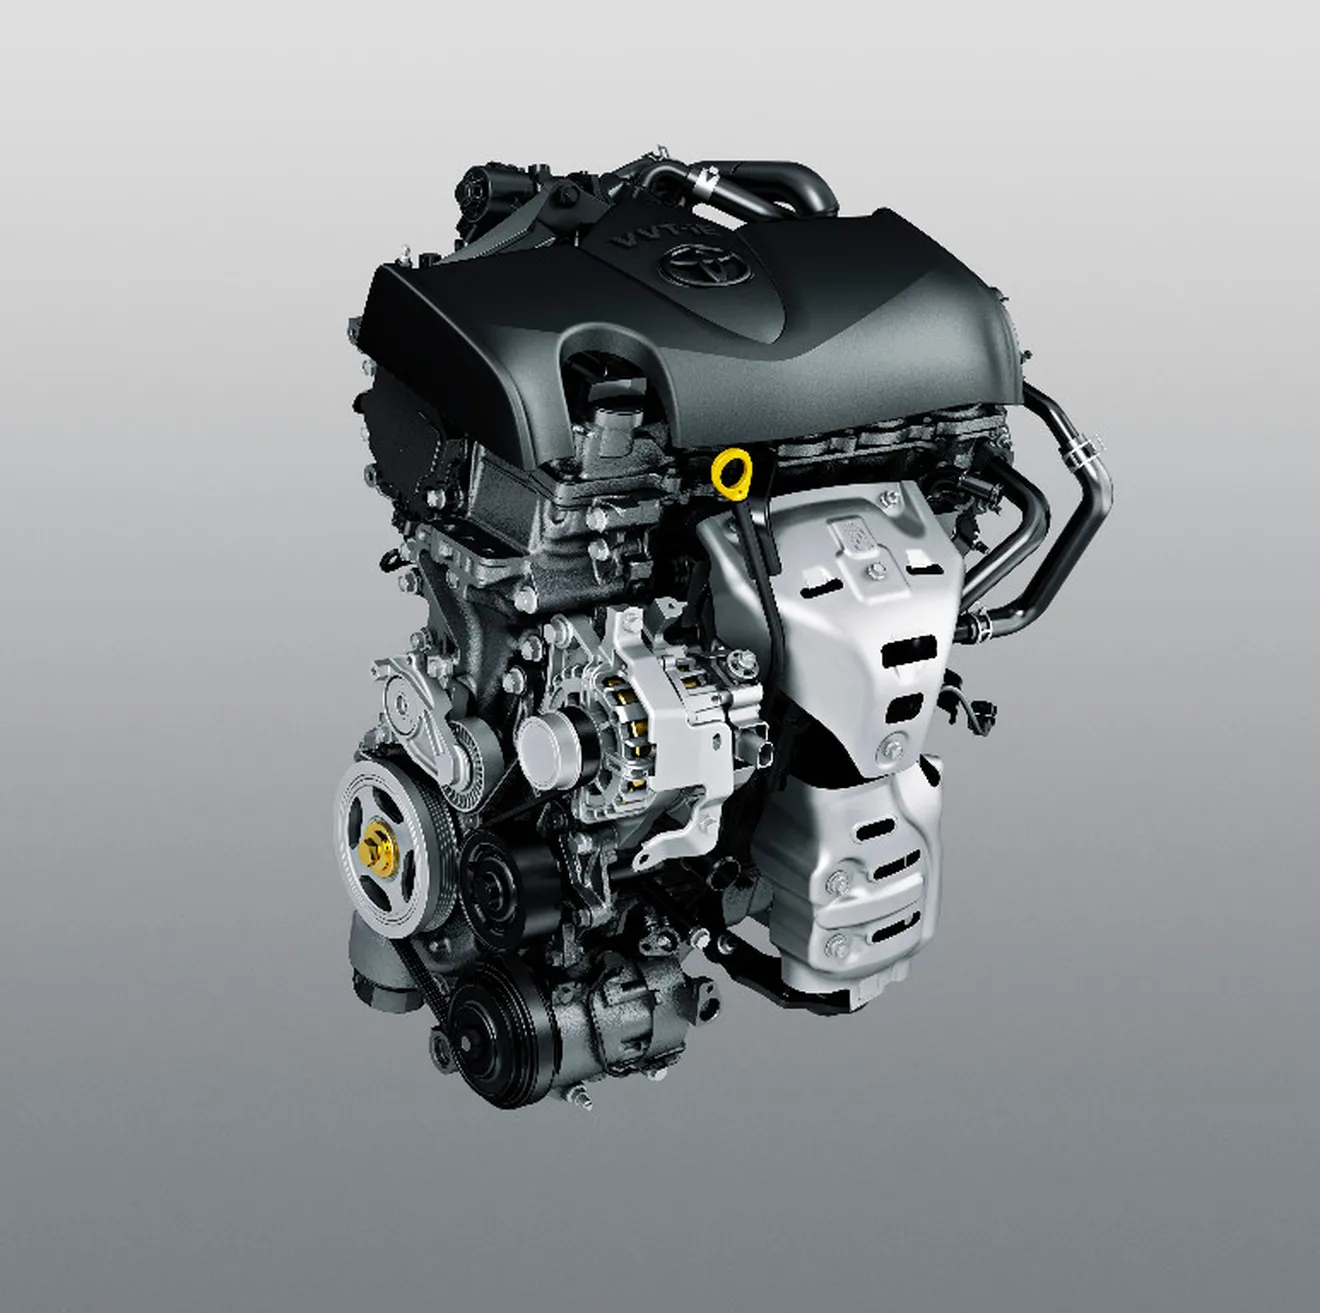 Toyota estrena nuevo y avanzado motor de 1.5 litros en el Yaris